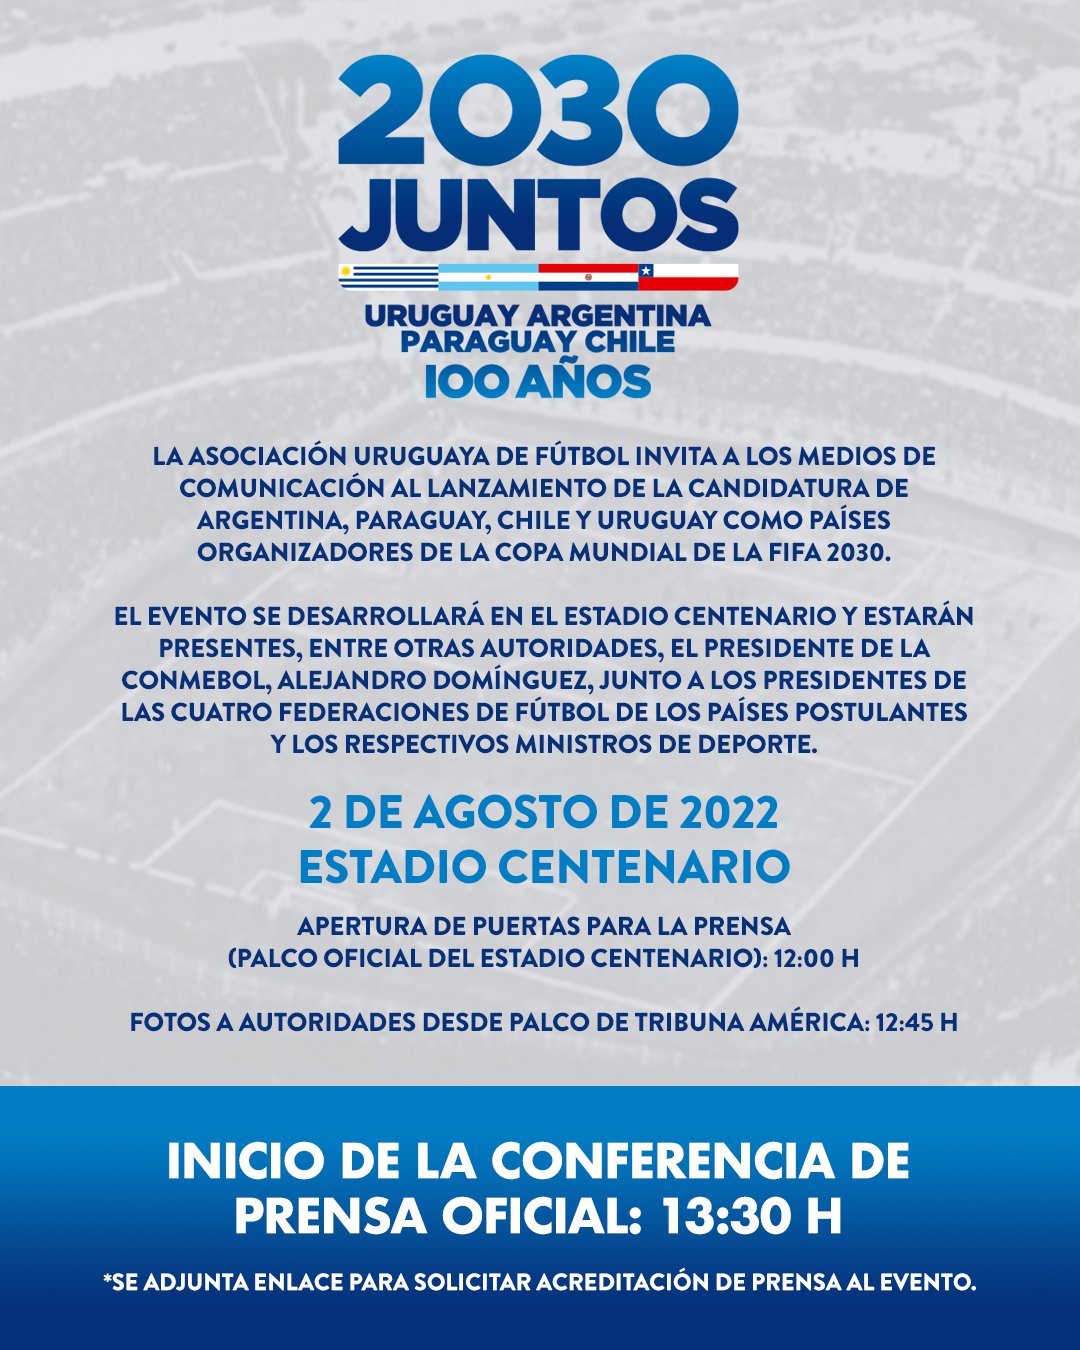 Uruguay Cup Oficial - Coerver Coaching Uruguay brinda el Curso Intro !!!  Aprovecha la Promo Uruguay Cup y seguí mejorando como entrenador de fútbol!!!  🇺🇾🏆⚽️🔝📃